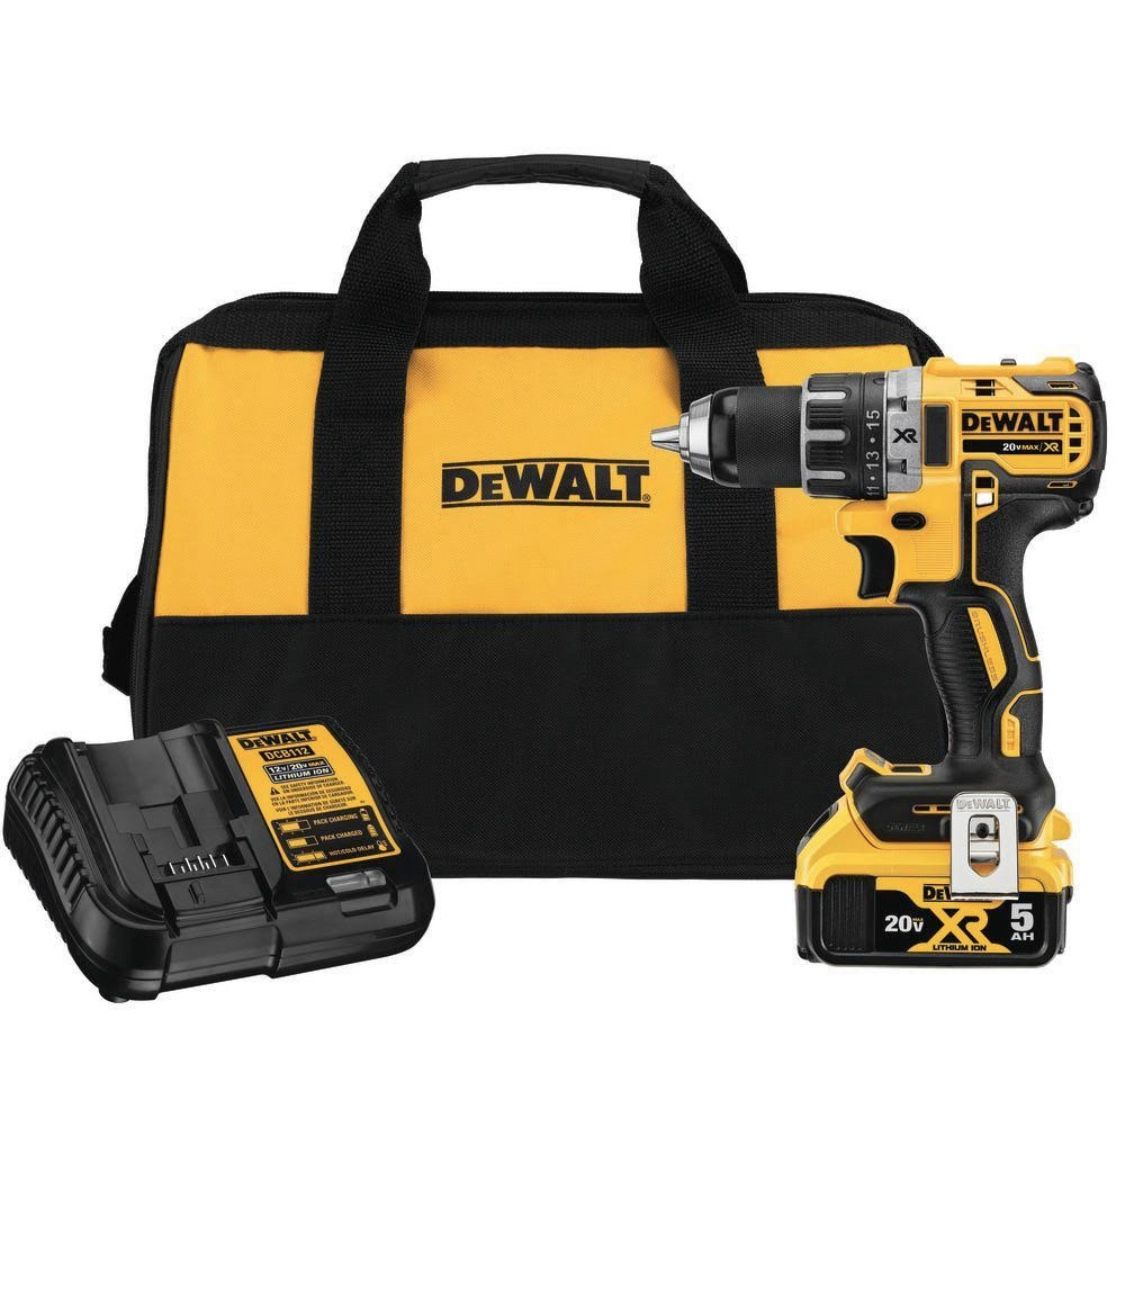 New DeWALT XR drill/driver set